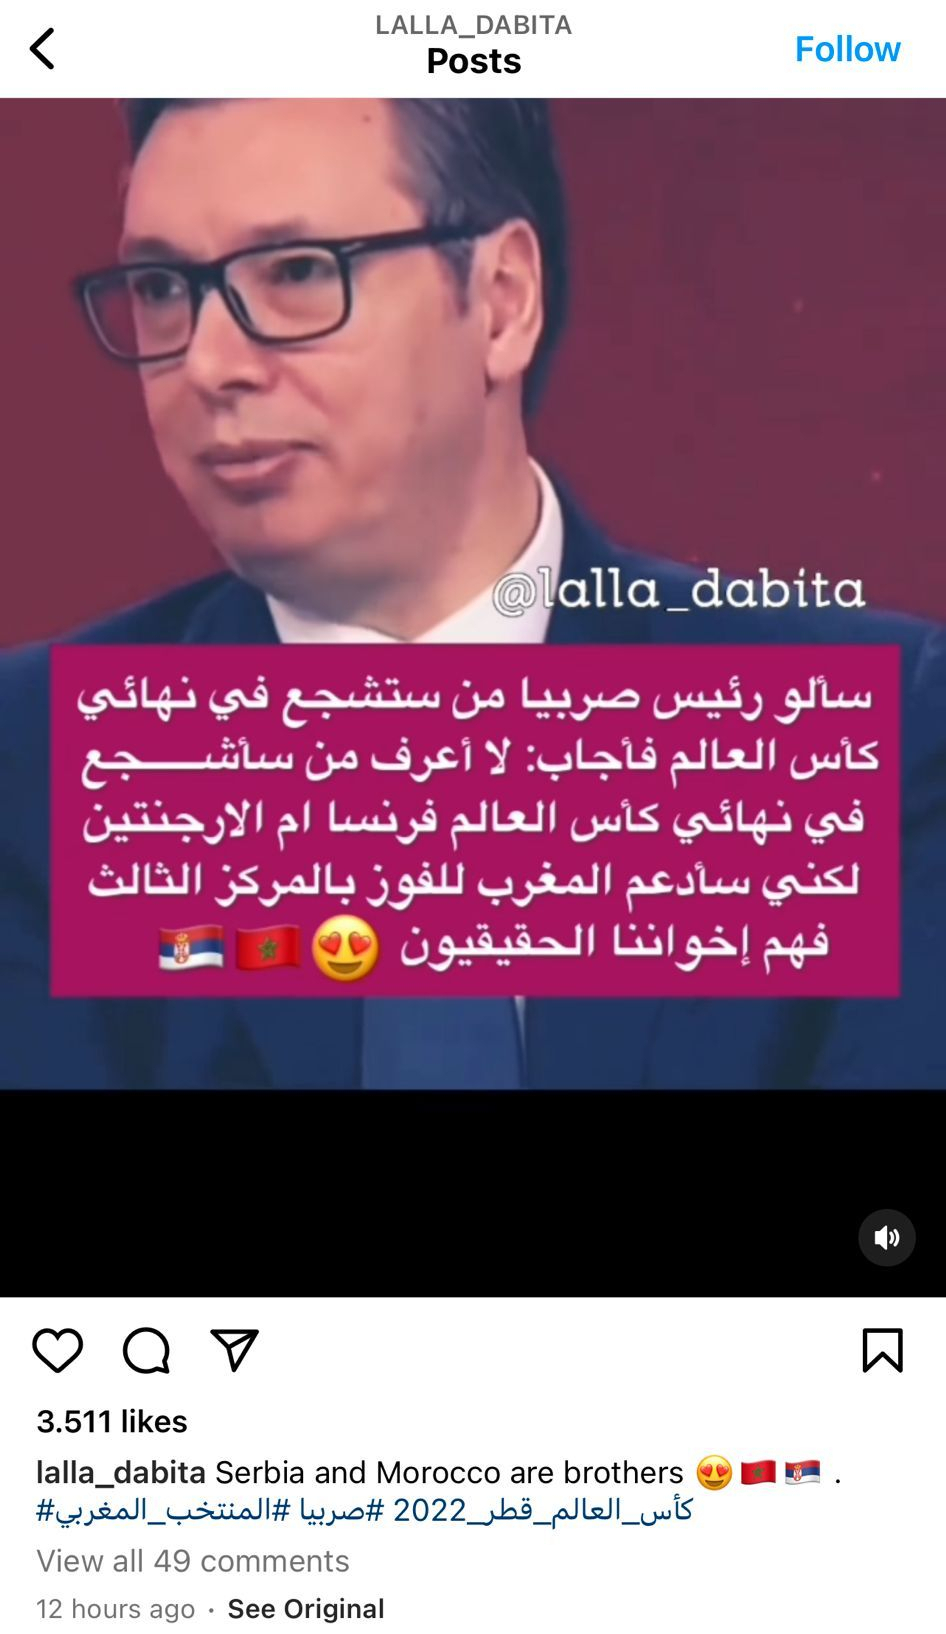 VUČIĆ HIT MEĐU MAROKANSKIM INFLUENSERIMA Šeruju predsednikov snimak uz poruku “Srbi i Marokanci su braća”